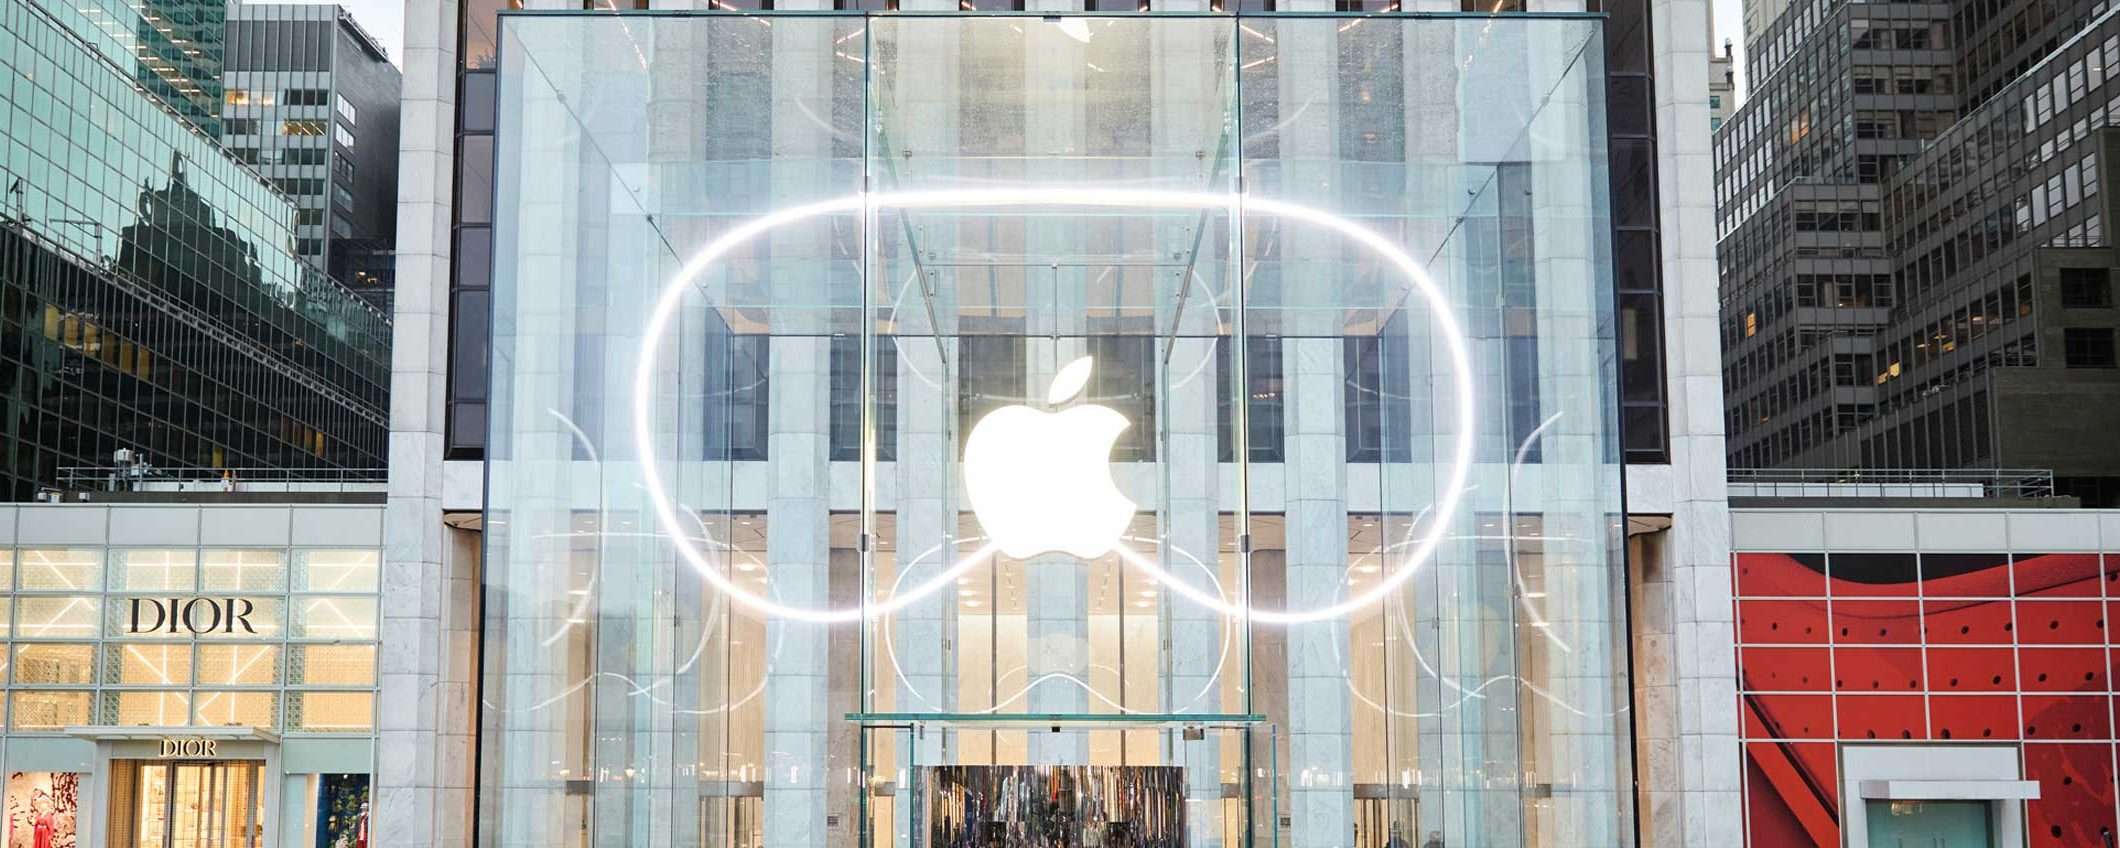 Apple Vision Pro: molti, troppi resi negli USA